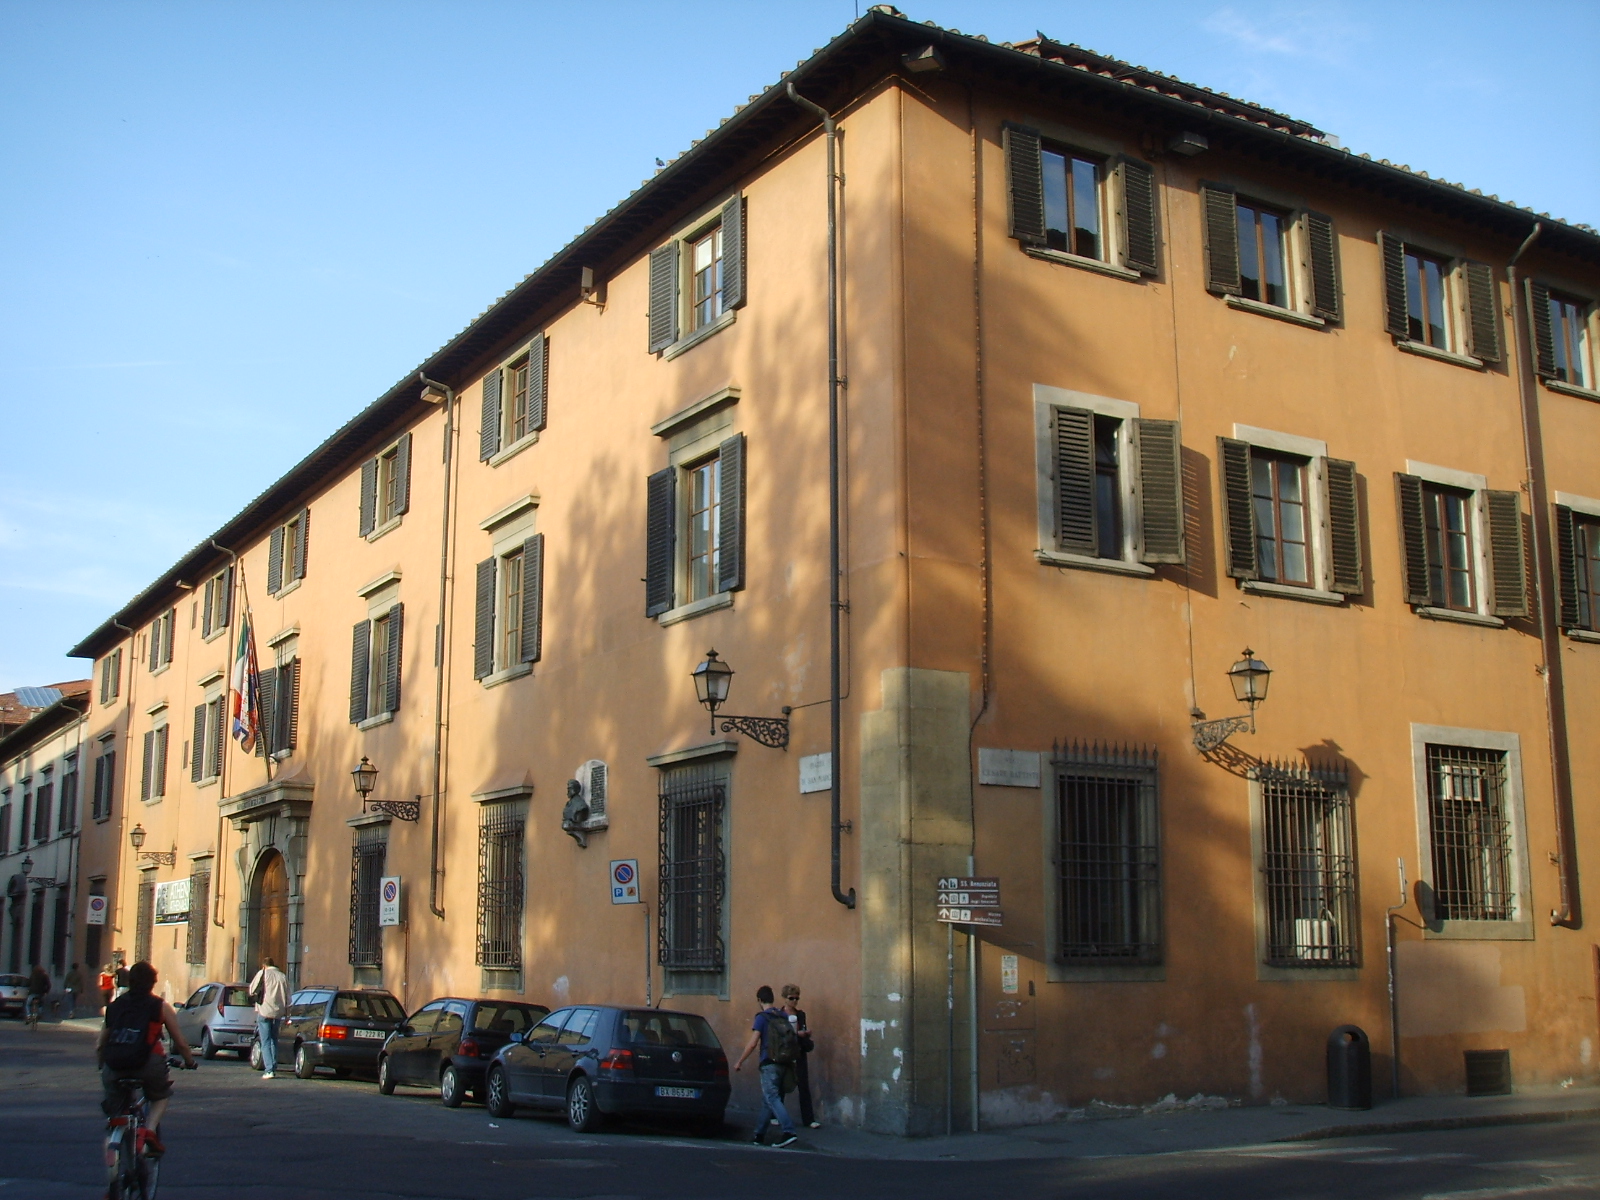 Palazzo_dell'università_di_firenze,_piazza_san_marco_FotoWikipedia